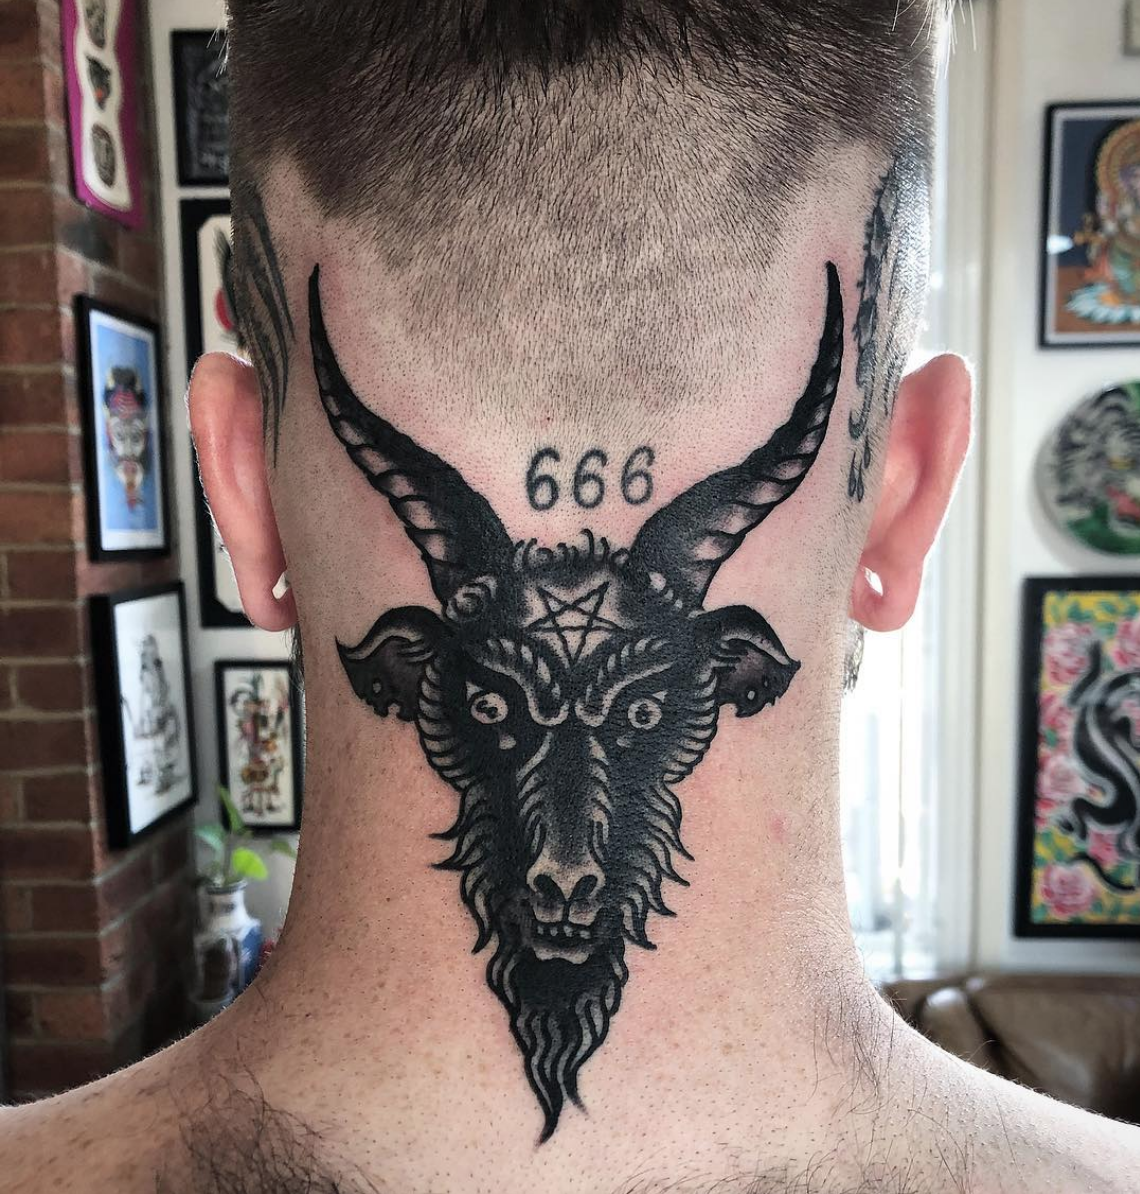 666 tattoo The Spiritual